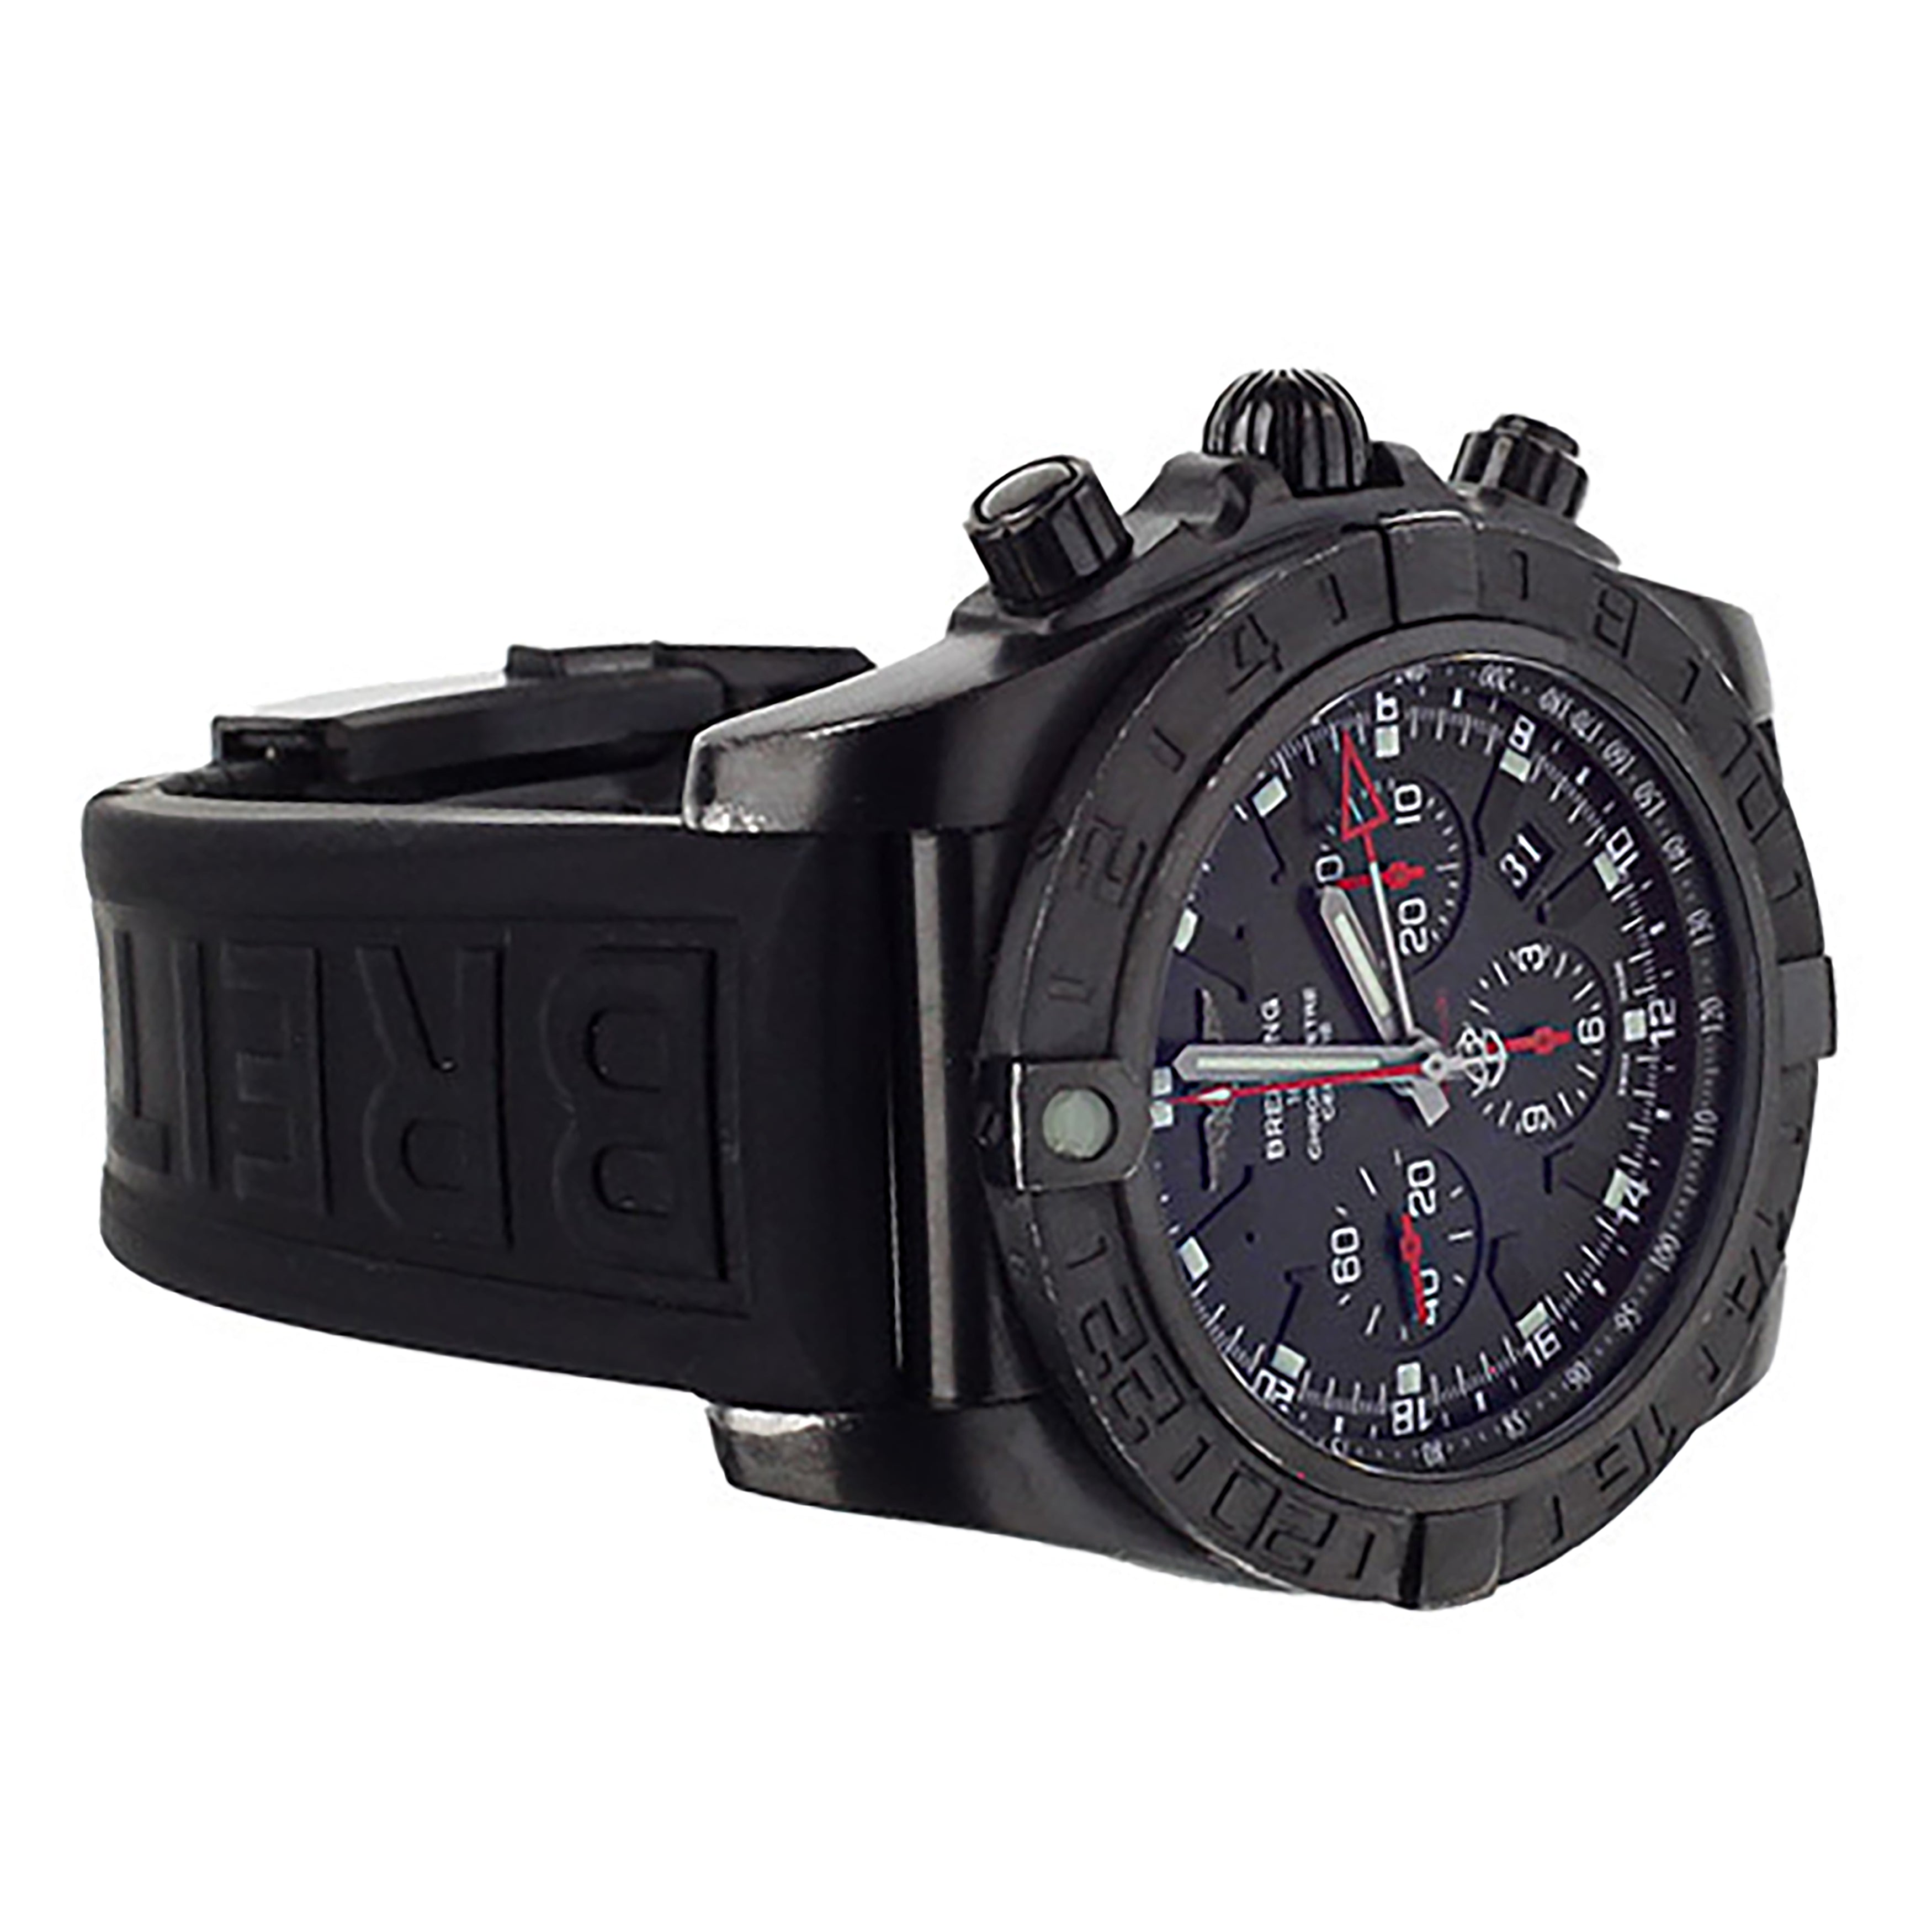 Breitling Chronomat GMT Black Stainless Steel Black 47mm MB041310/BC78 full set